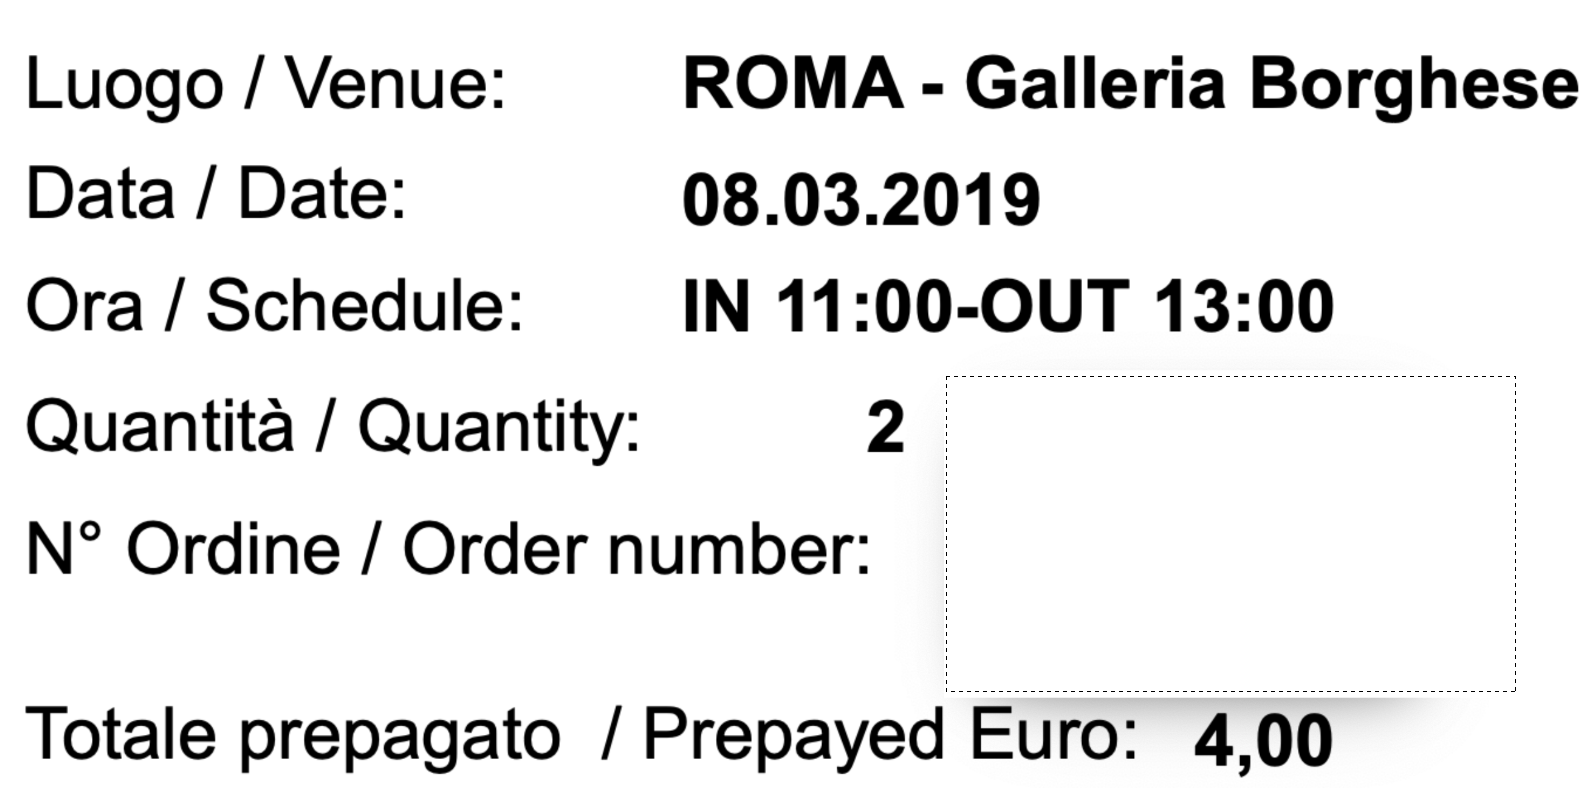 Музеи Рима (галерея Боргезе, Колизей, Форум): покупка билетов и посещение